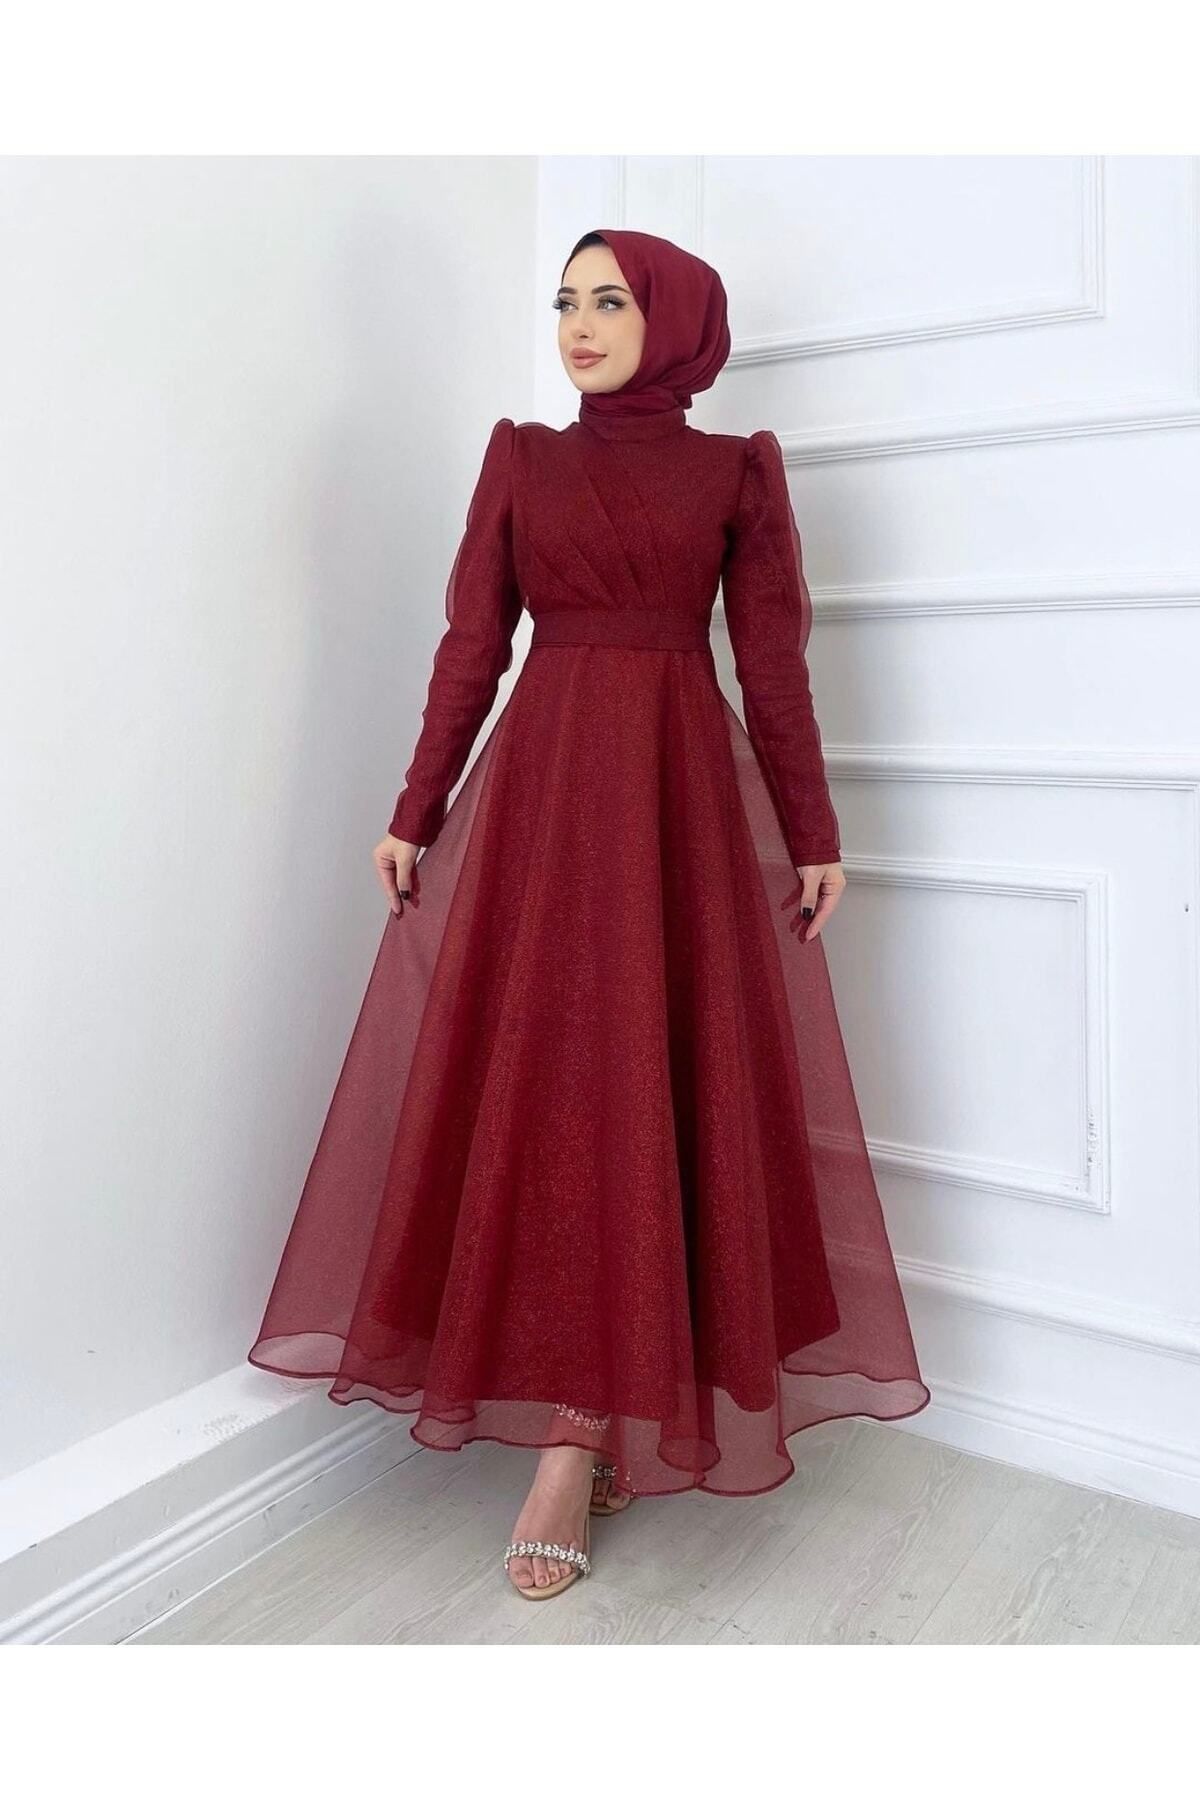 MERVEPLUME Tesettür Simli Organze Tül Abiye Tasarım Elbise Moda Düğün Şıklığı – Bordo